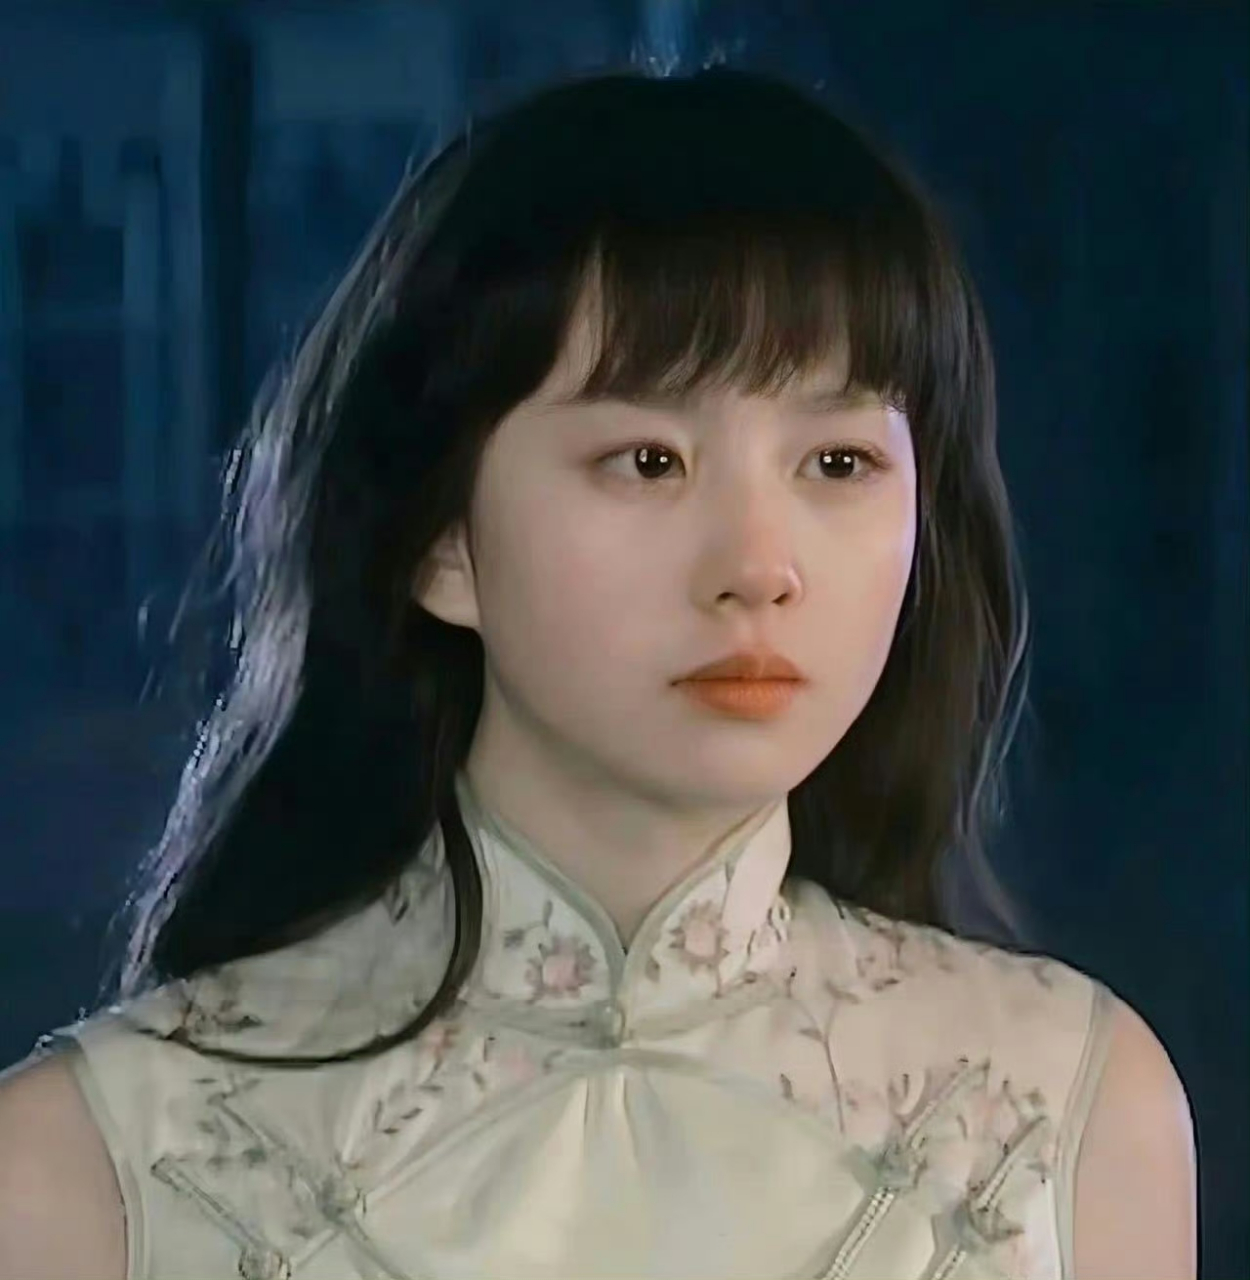 17岁的齐刘海刘诗诗好嫩,这白月光般的美貌,就是我的初恋脸,谁看了不